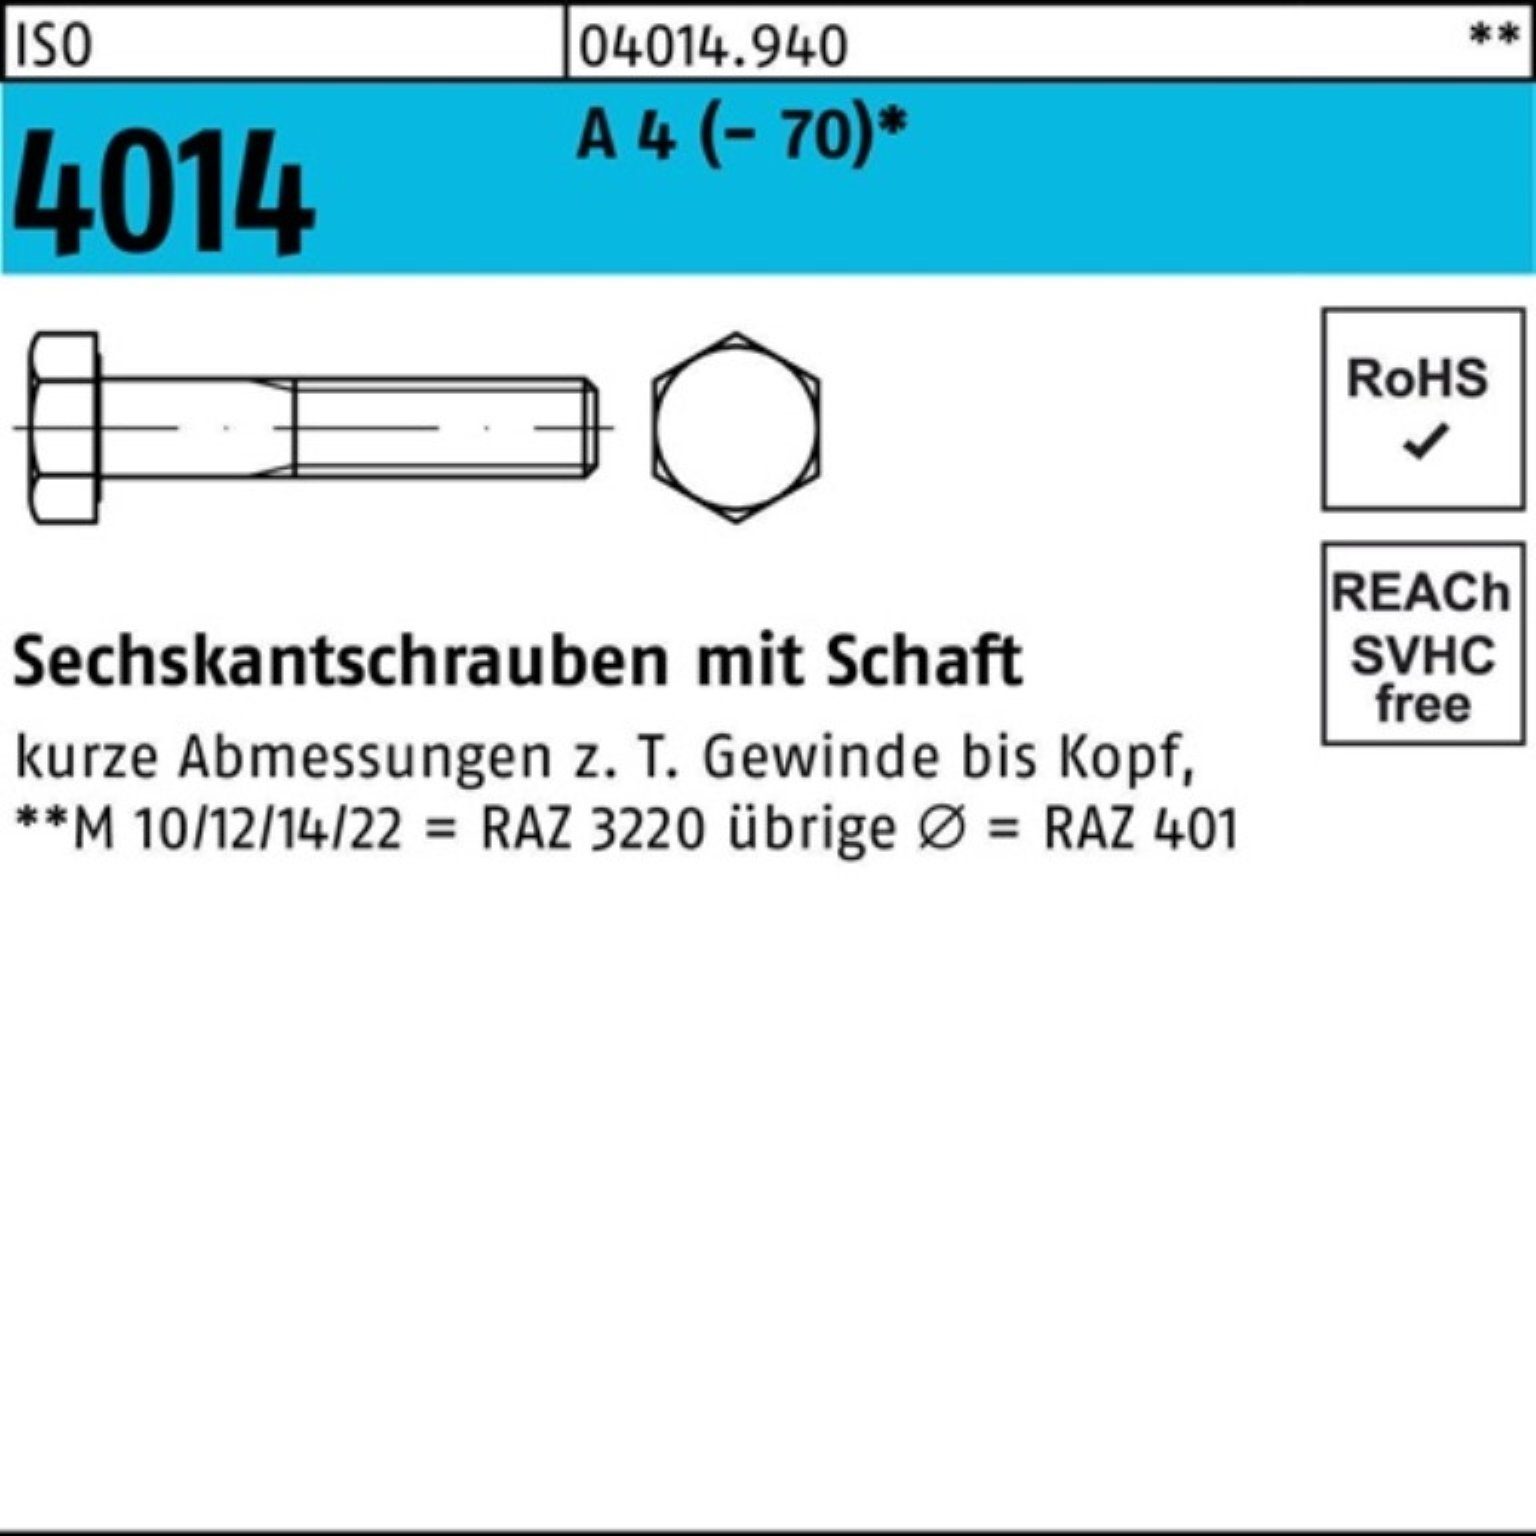 Bufab Sechskantschraube M16x Pack 4014 (70) Schaft Sechskantschraube A ISO St 4 25 100er 90